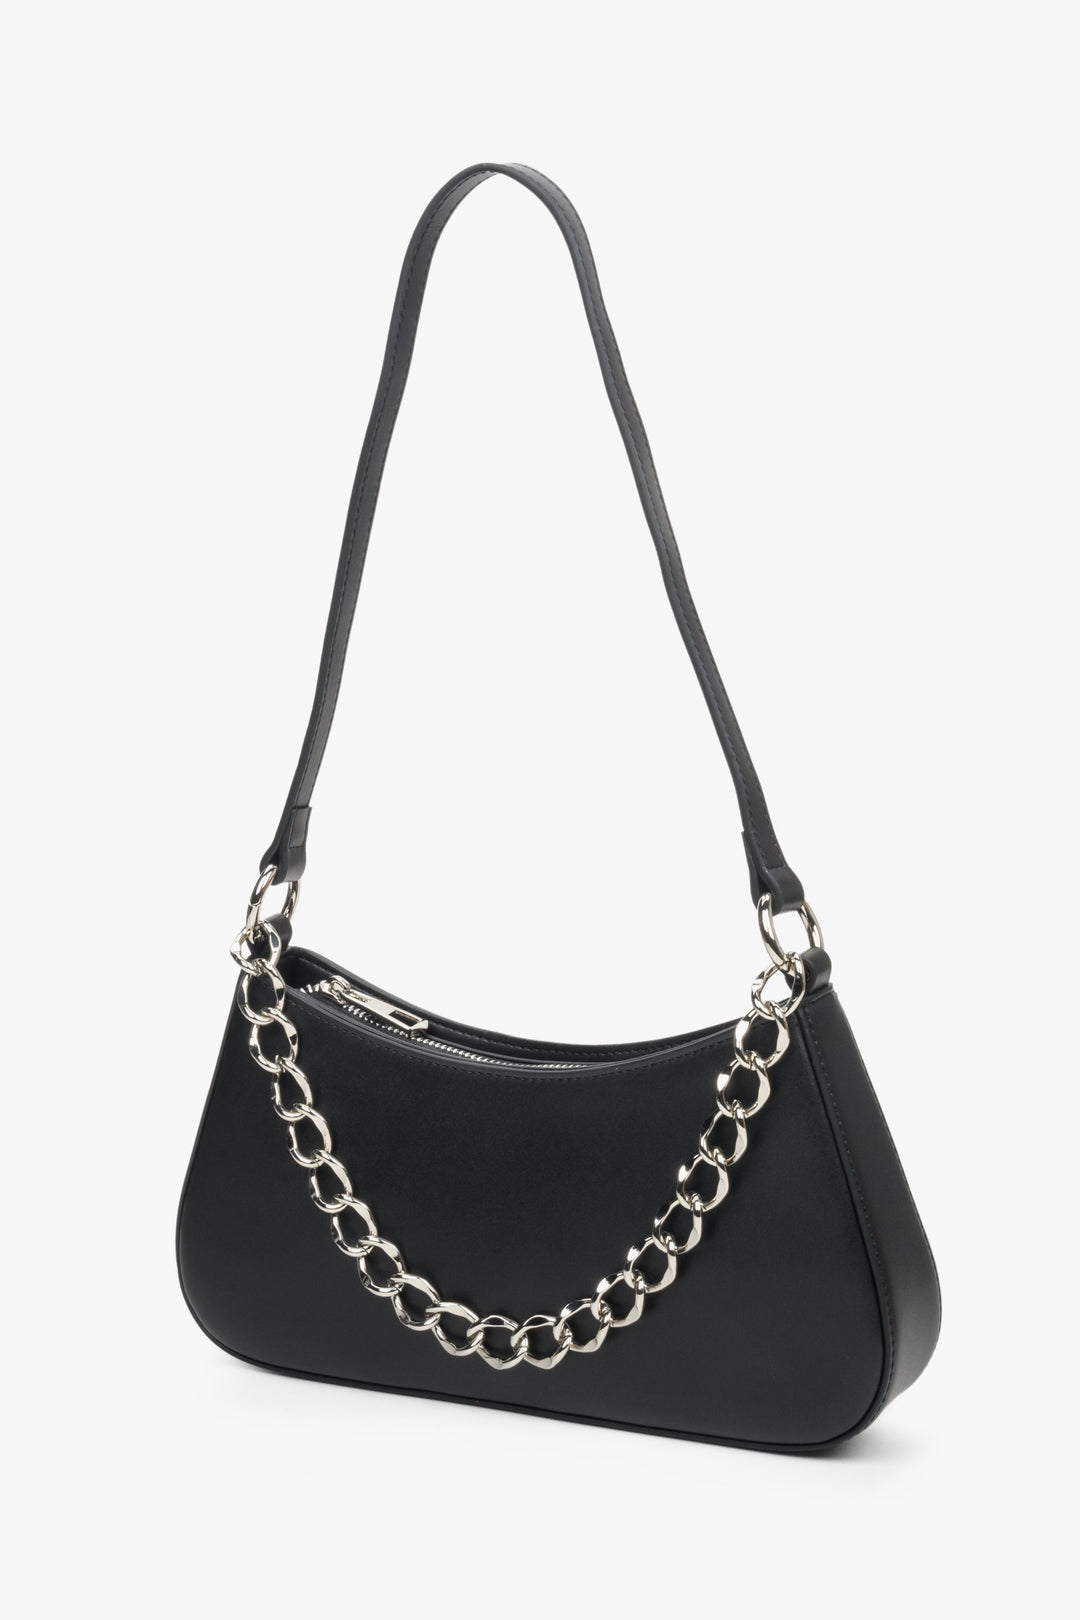 Women's black leather baguette chain bag by Estro.